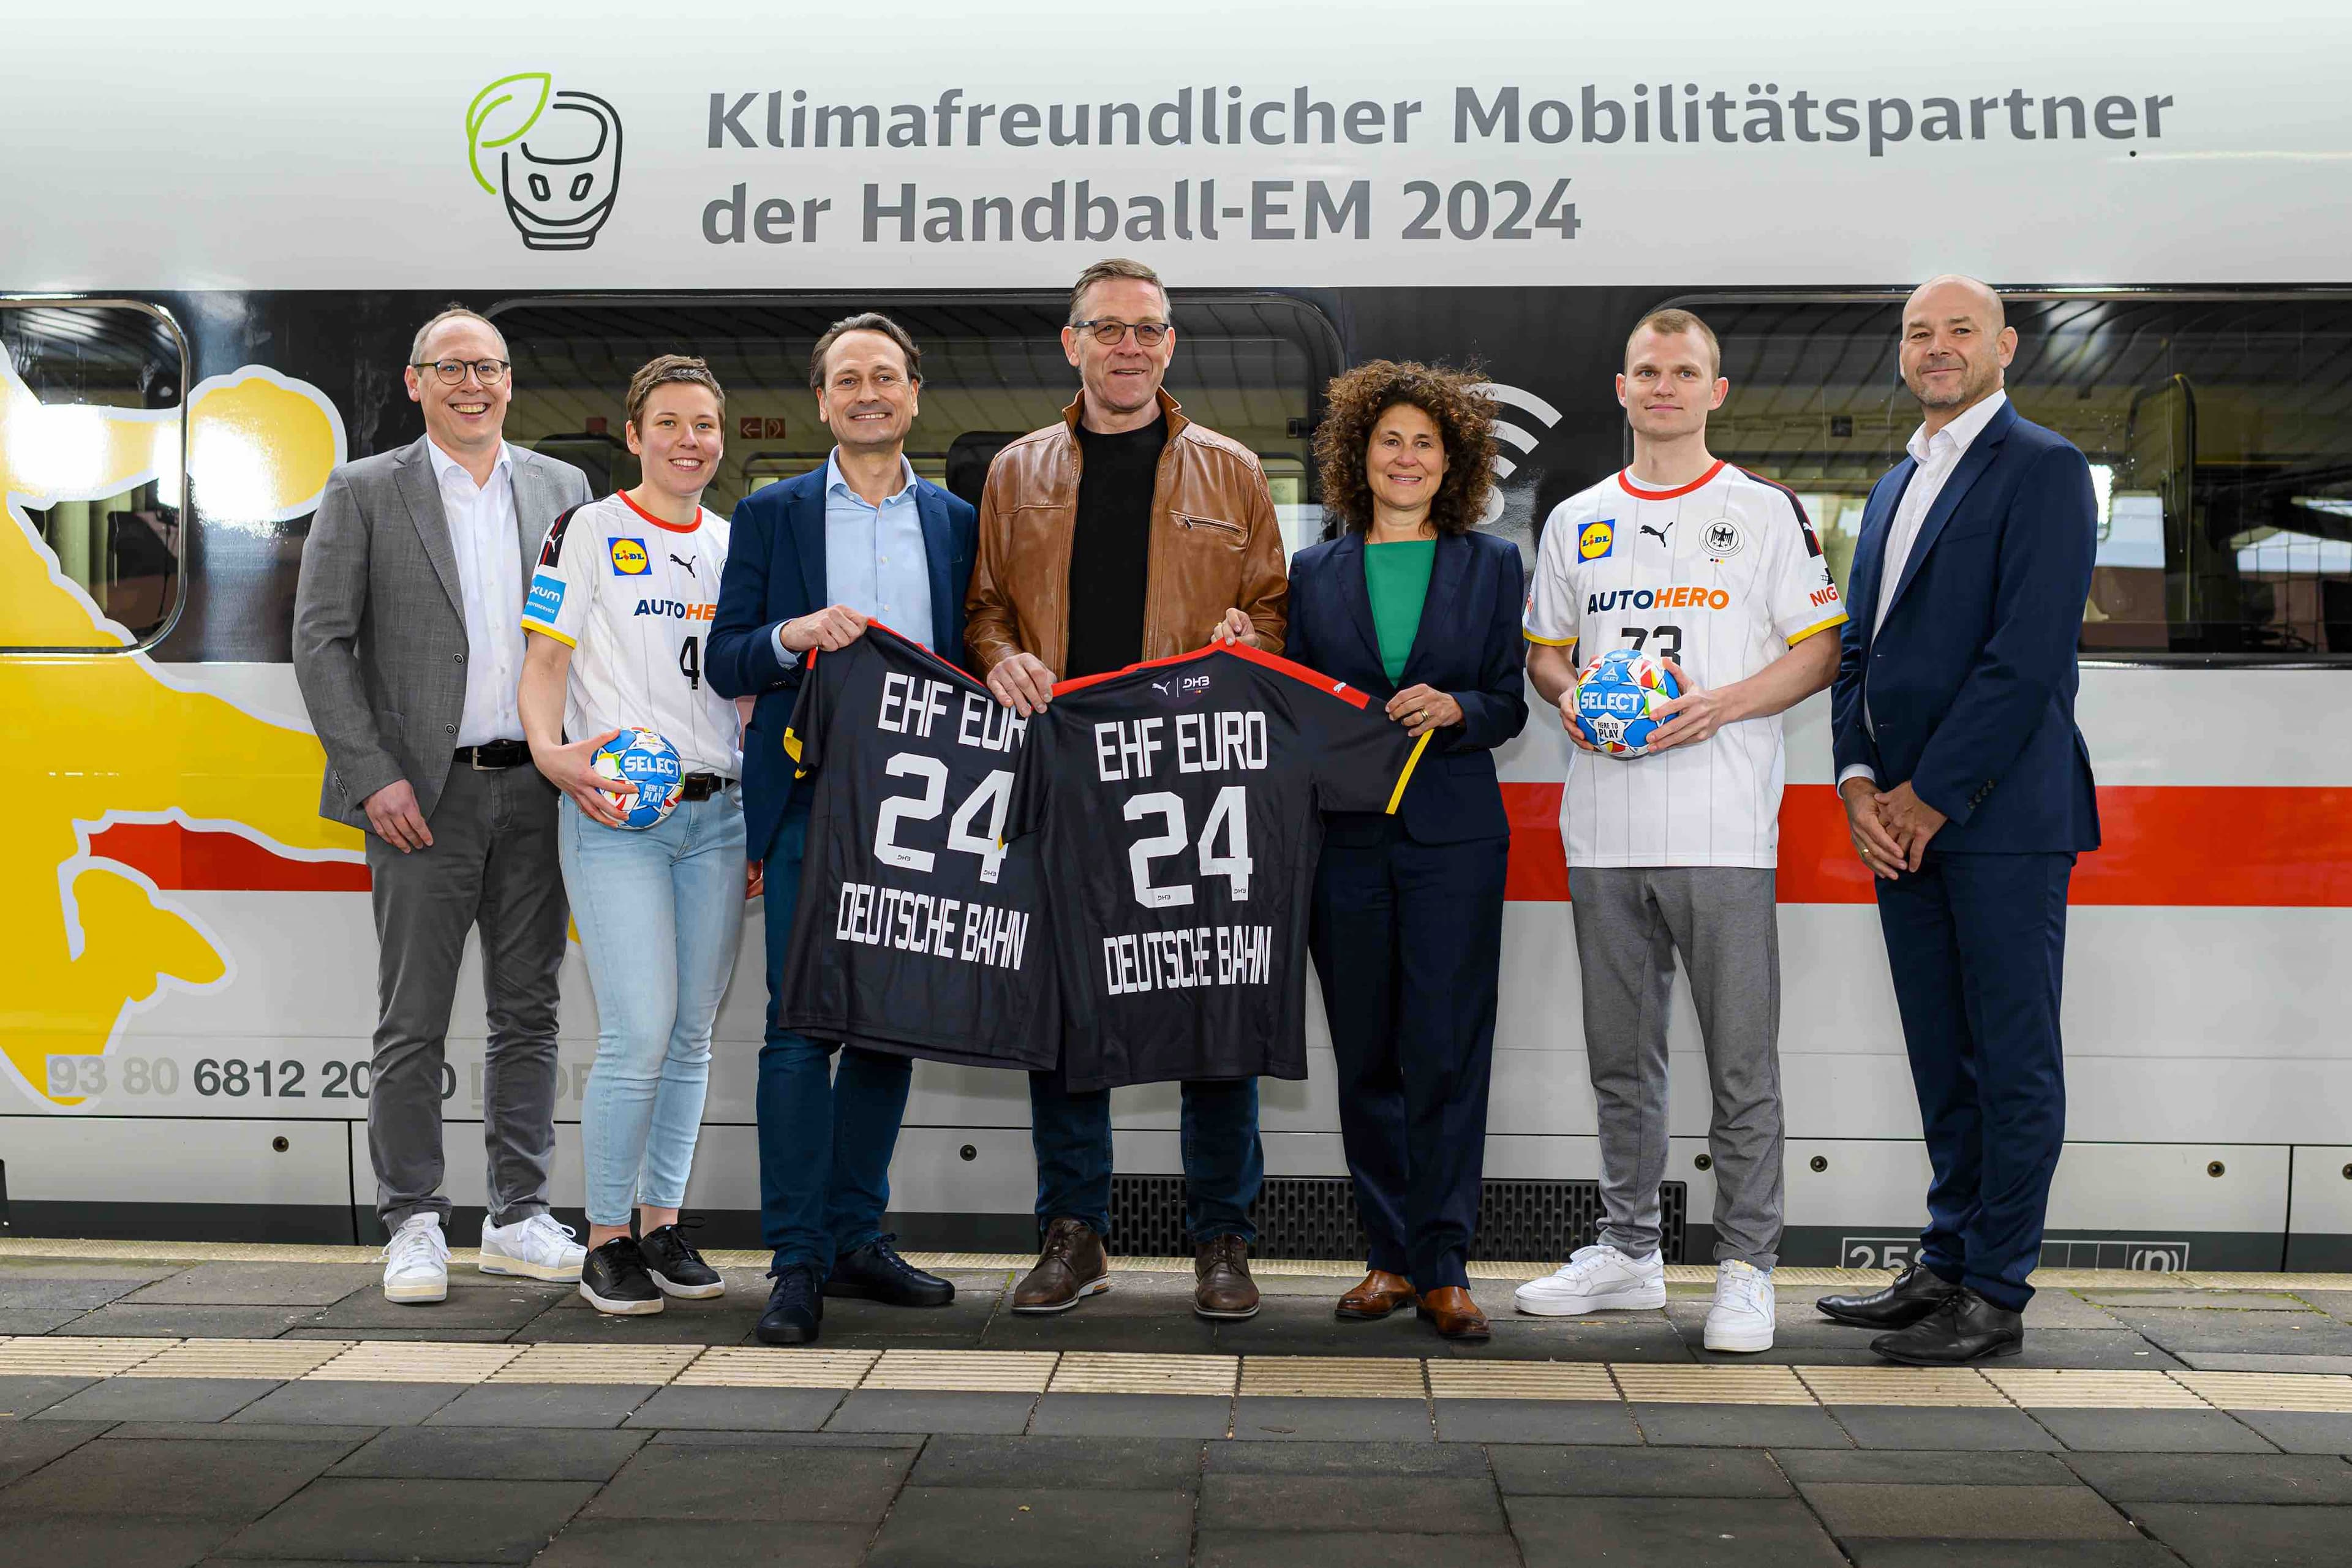 Mobilitätspartner der EHF EURO 2024: Die Deutsche Bahn ist offizieller Sponsor der Heim-EM im kommenden Jahr. (Foto: picture alliance / Marco Wolf | Marco Wolf)